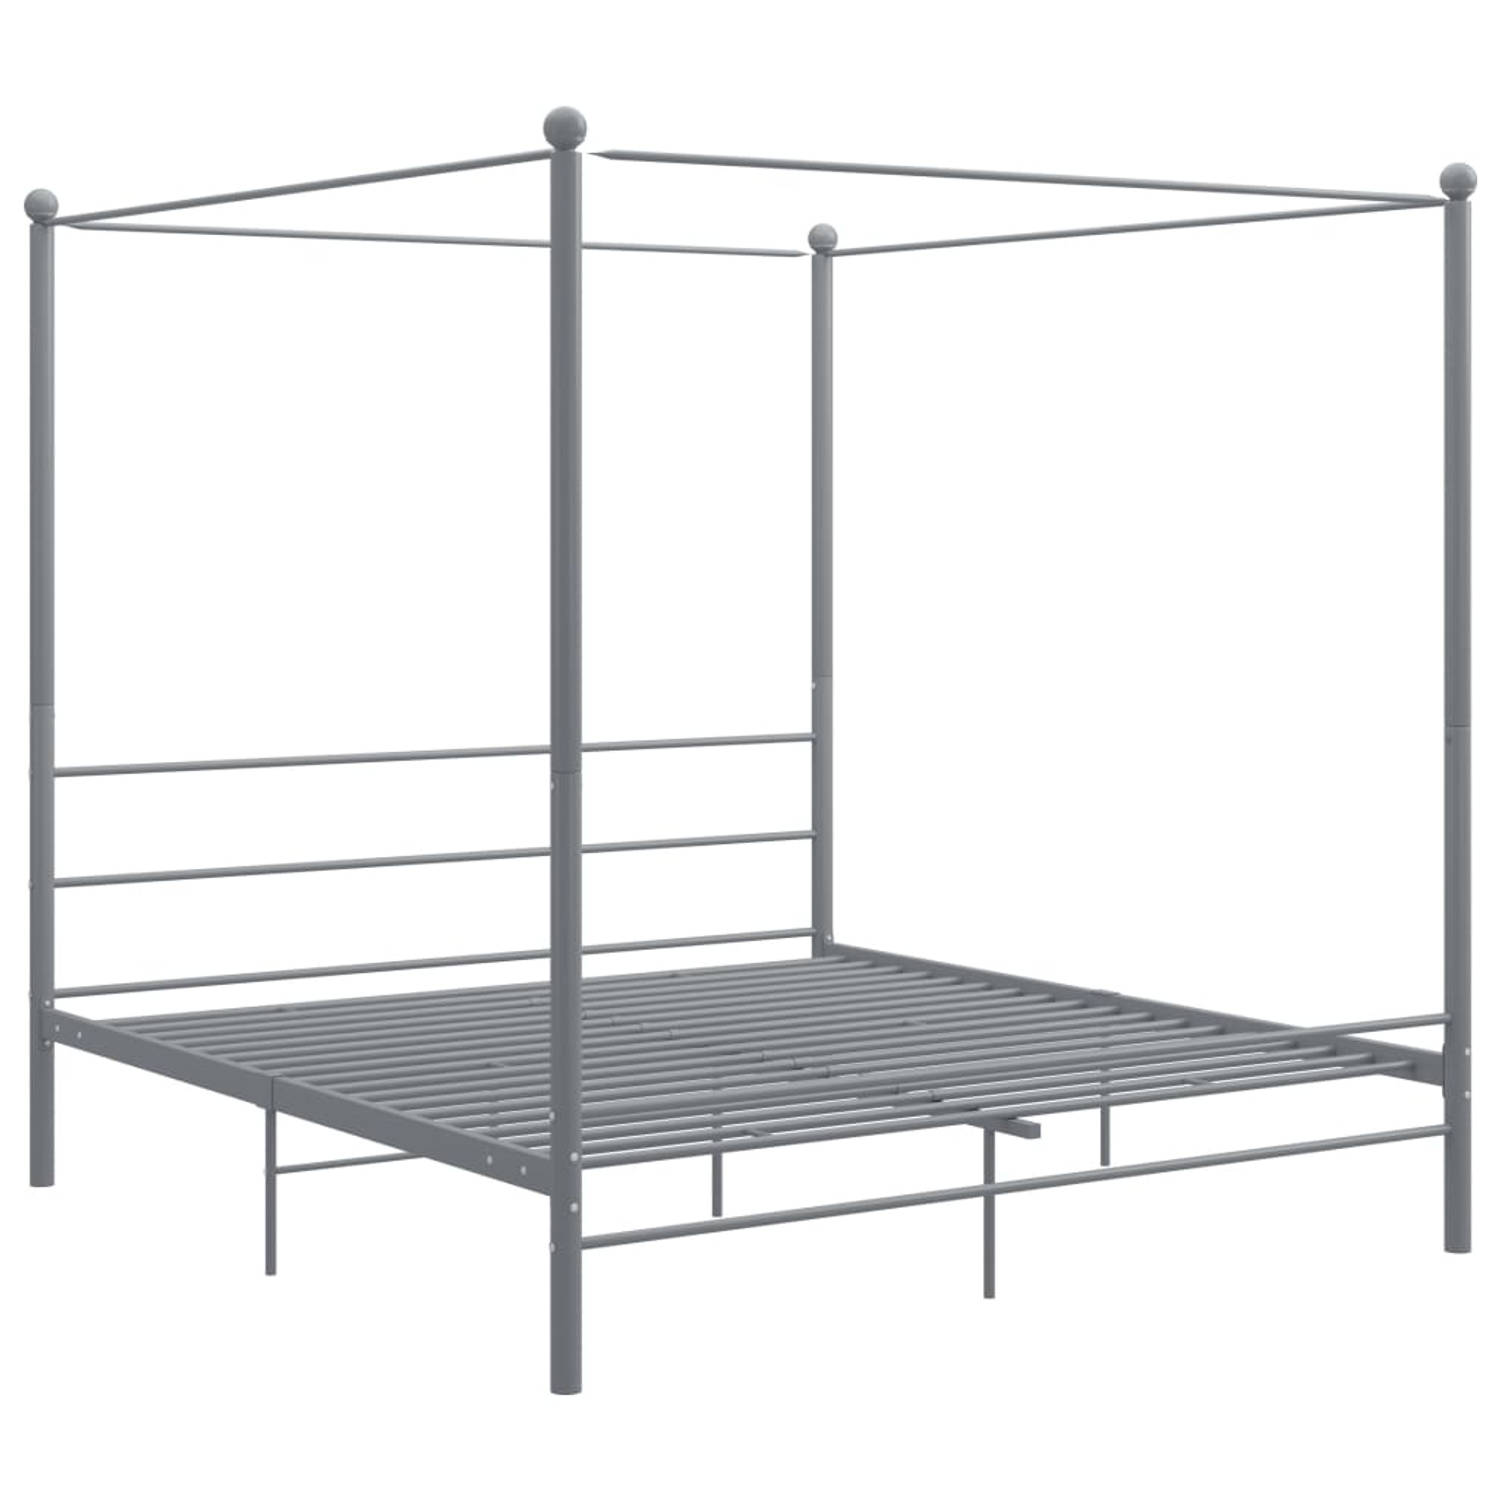 The Living Store Hemelbedframe metaal grijs 200x200 cm - Bedframe - Bedframe - Bed Frame - Bed Frames - Bed - Bedden - Metalen Bedframe - Metalen Bedframes - 2-persoonsbed - 2